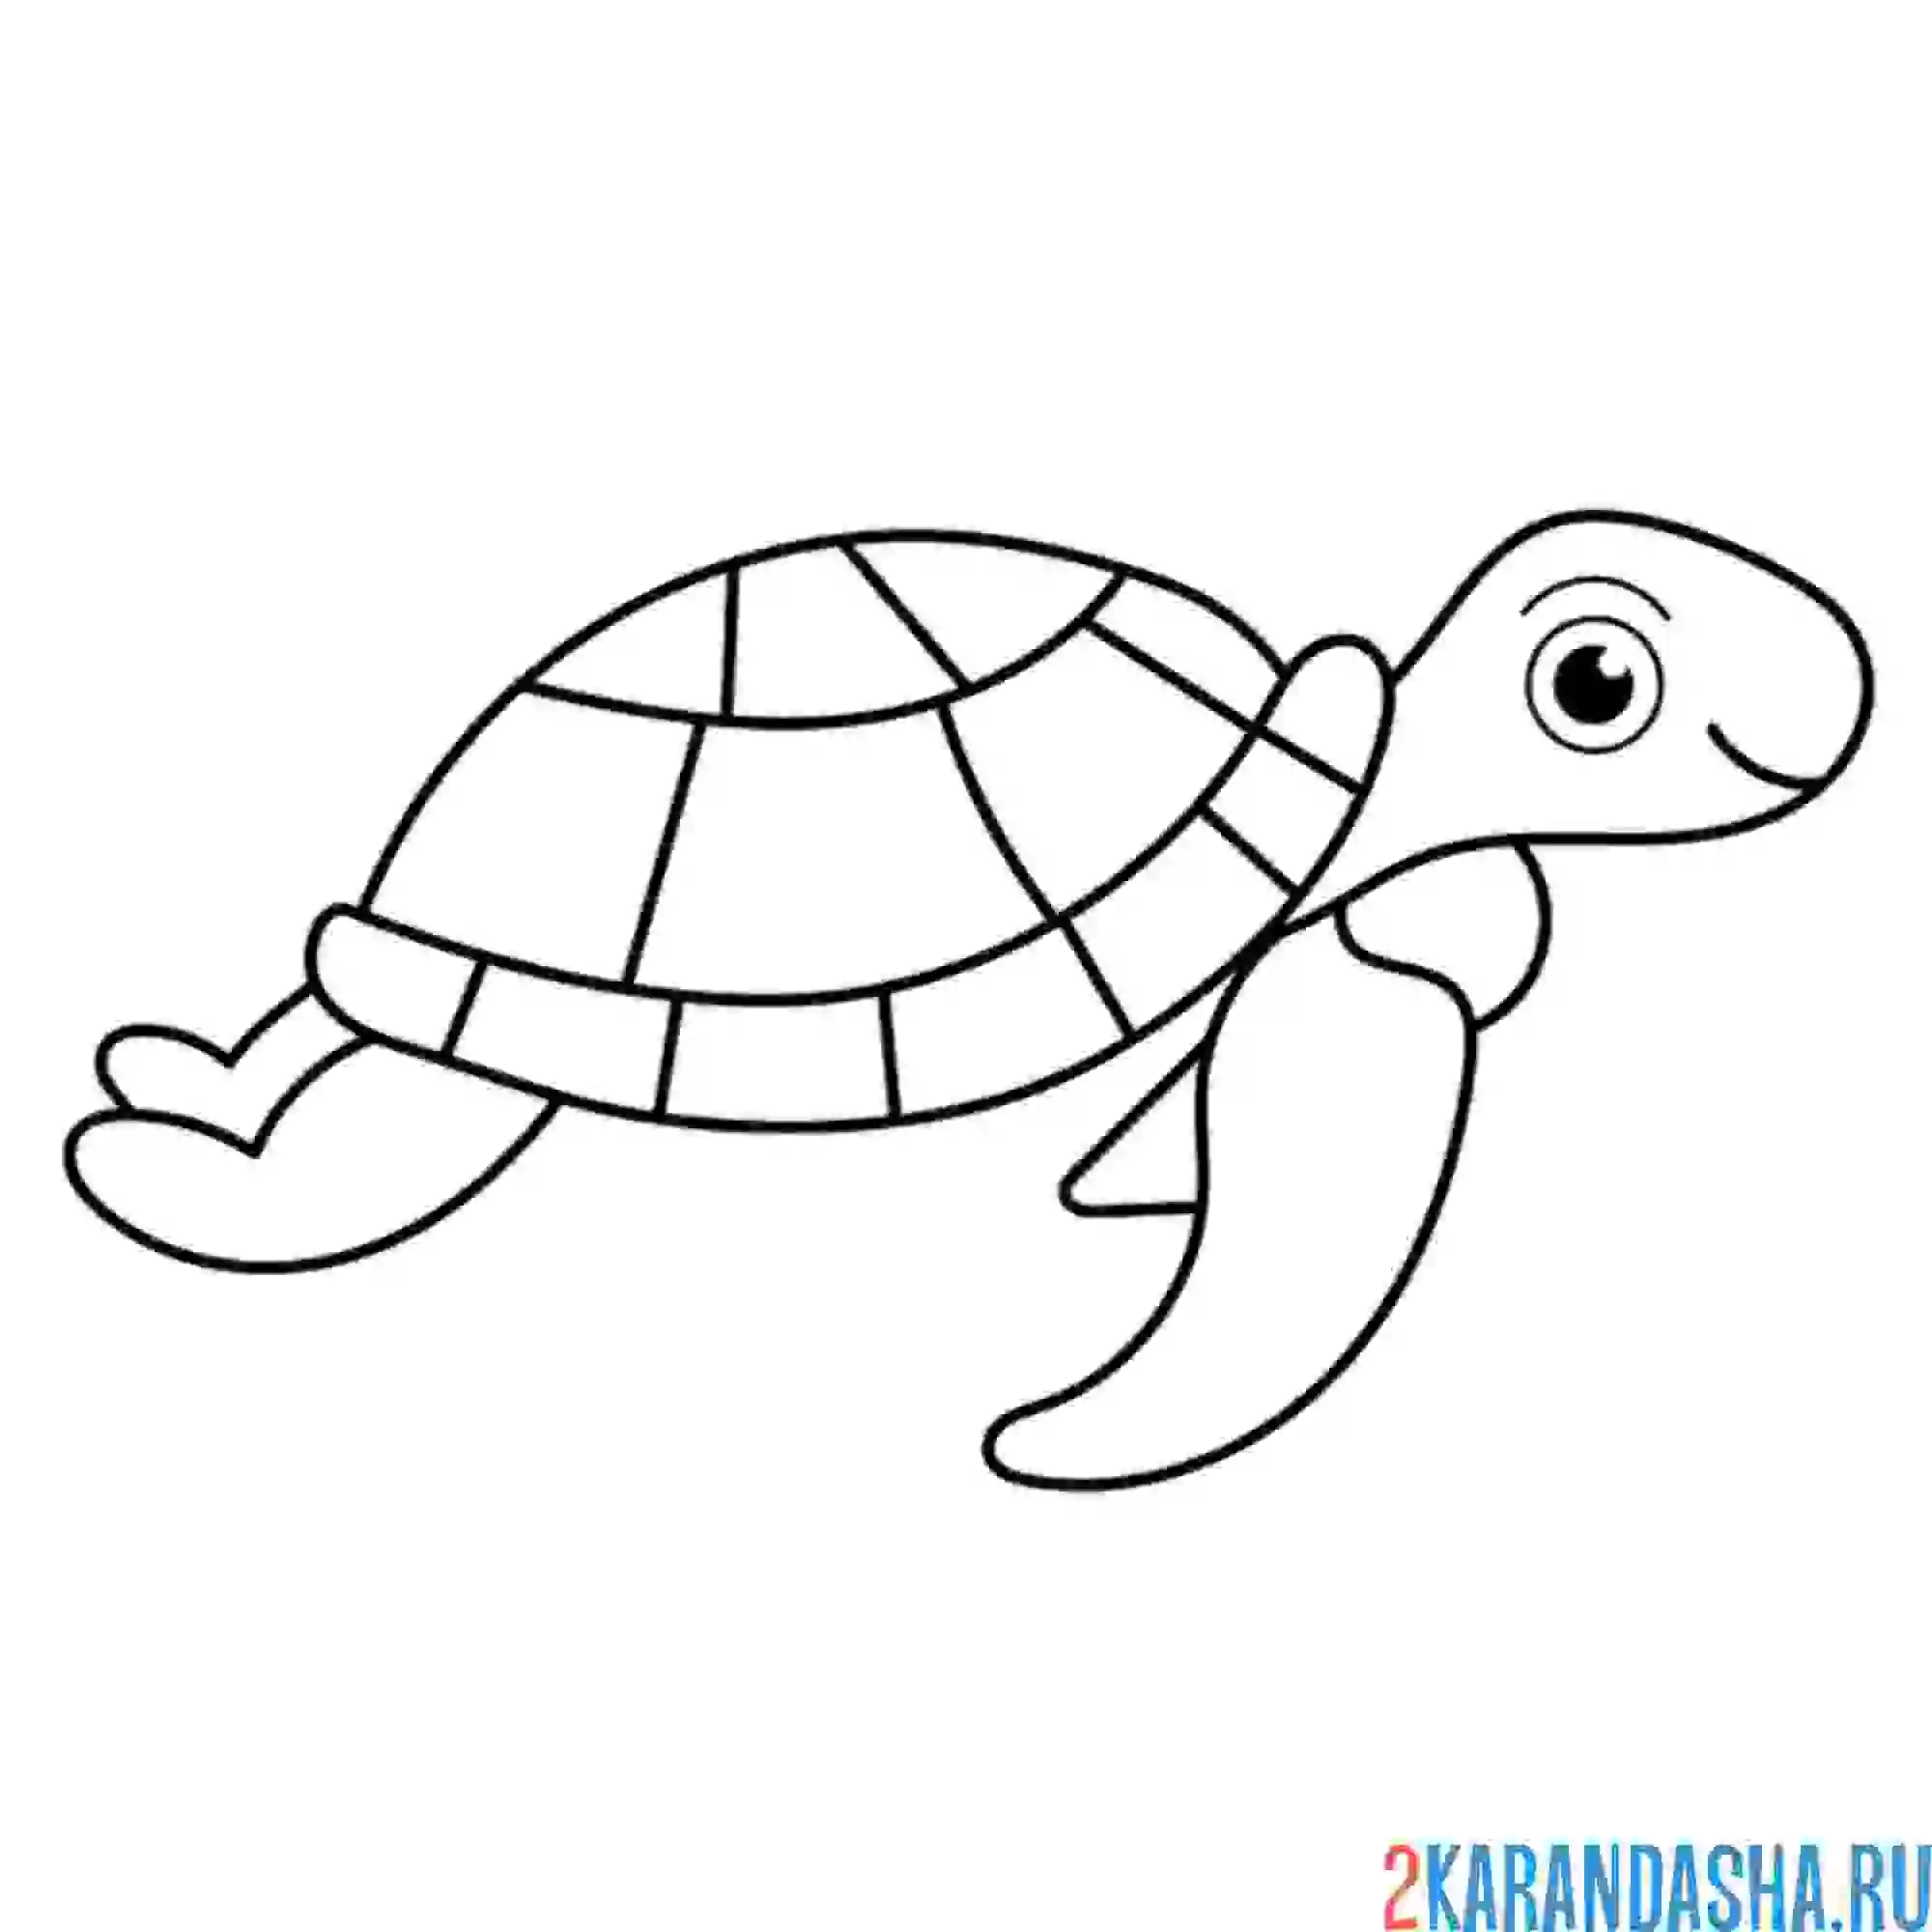 Раскраска рисунок черепахи